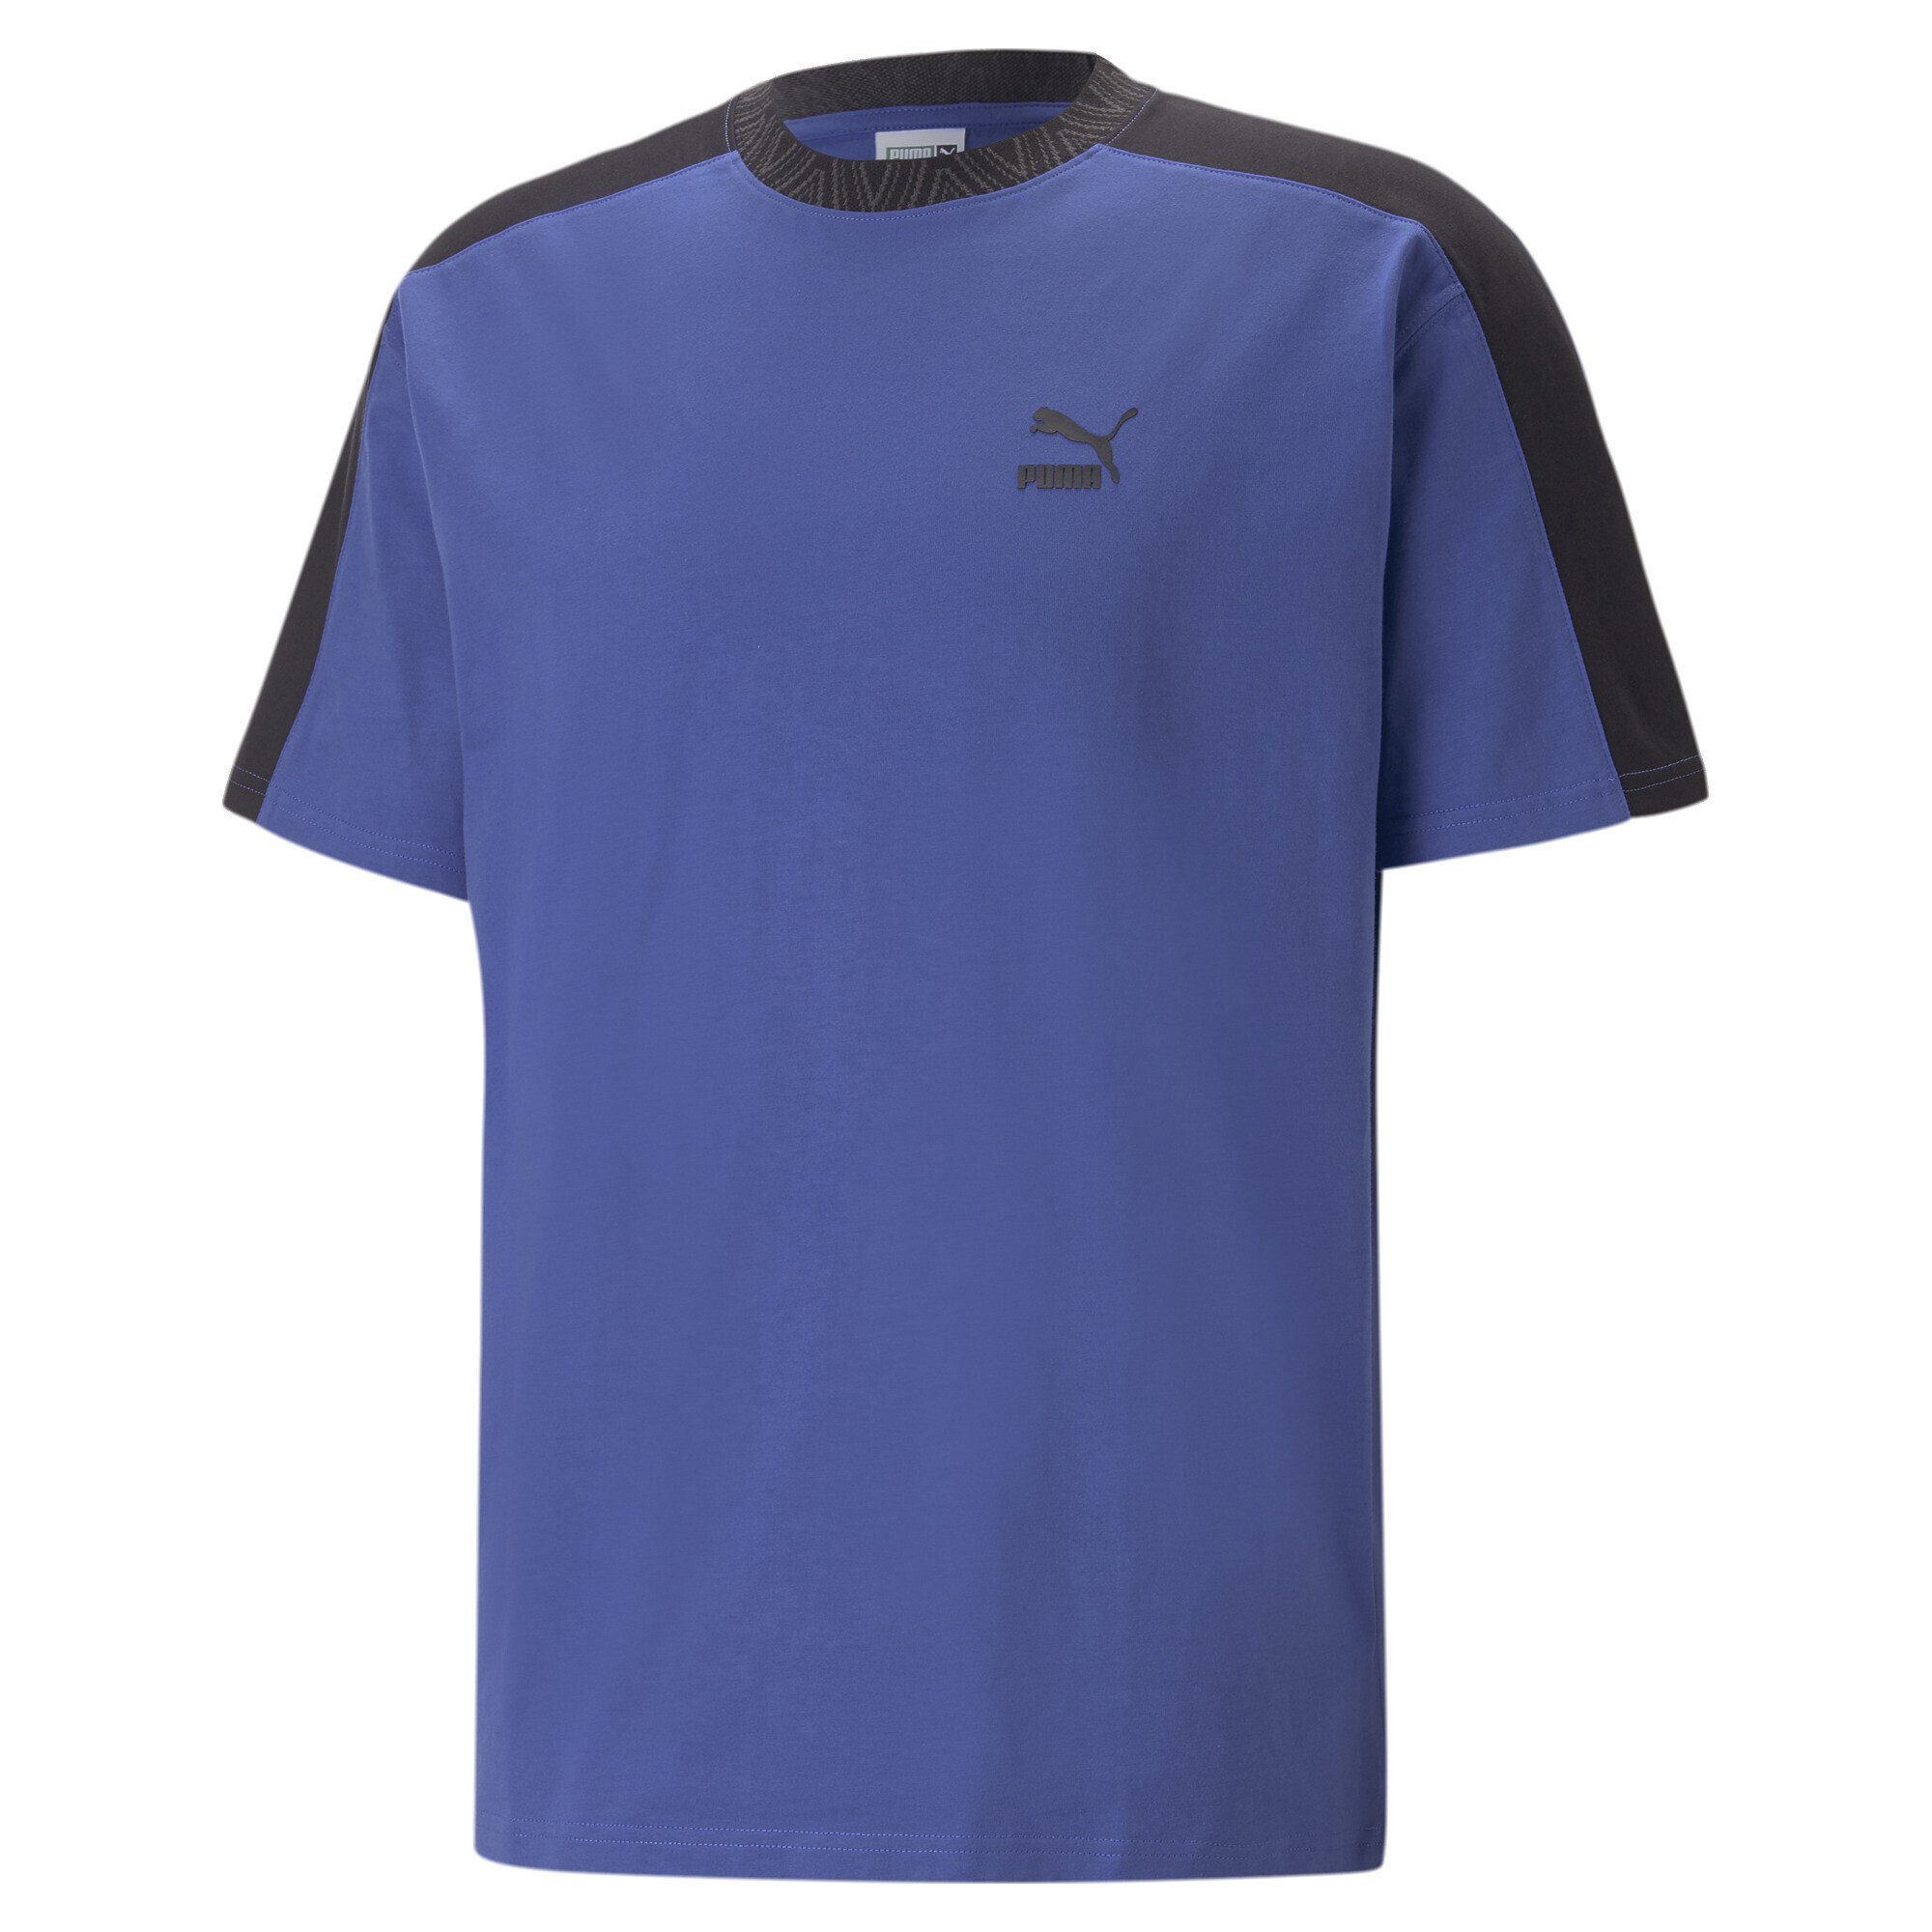 PUMA T-Shirt T7 TREND 7ETTER T-Shirt Herren Royal Sapphire Blue